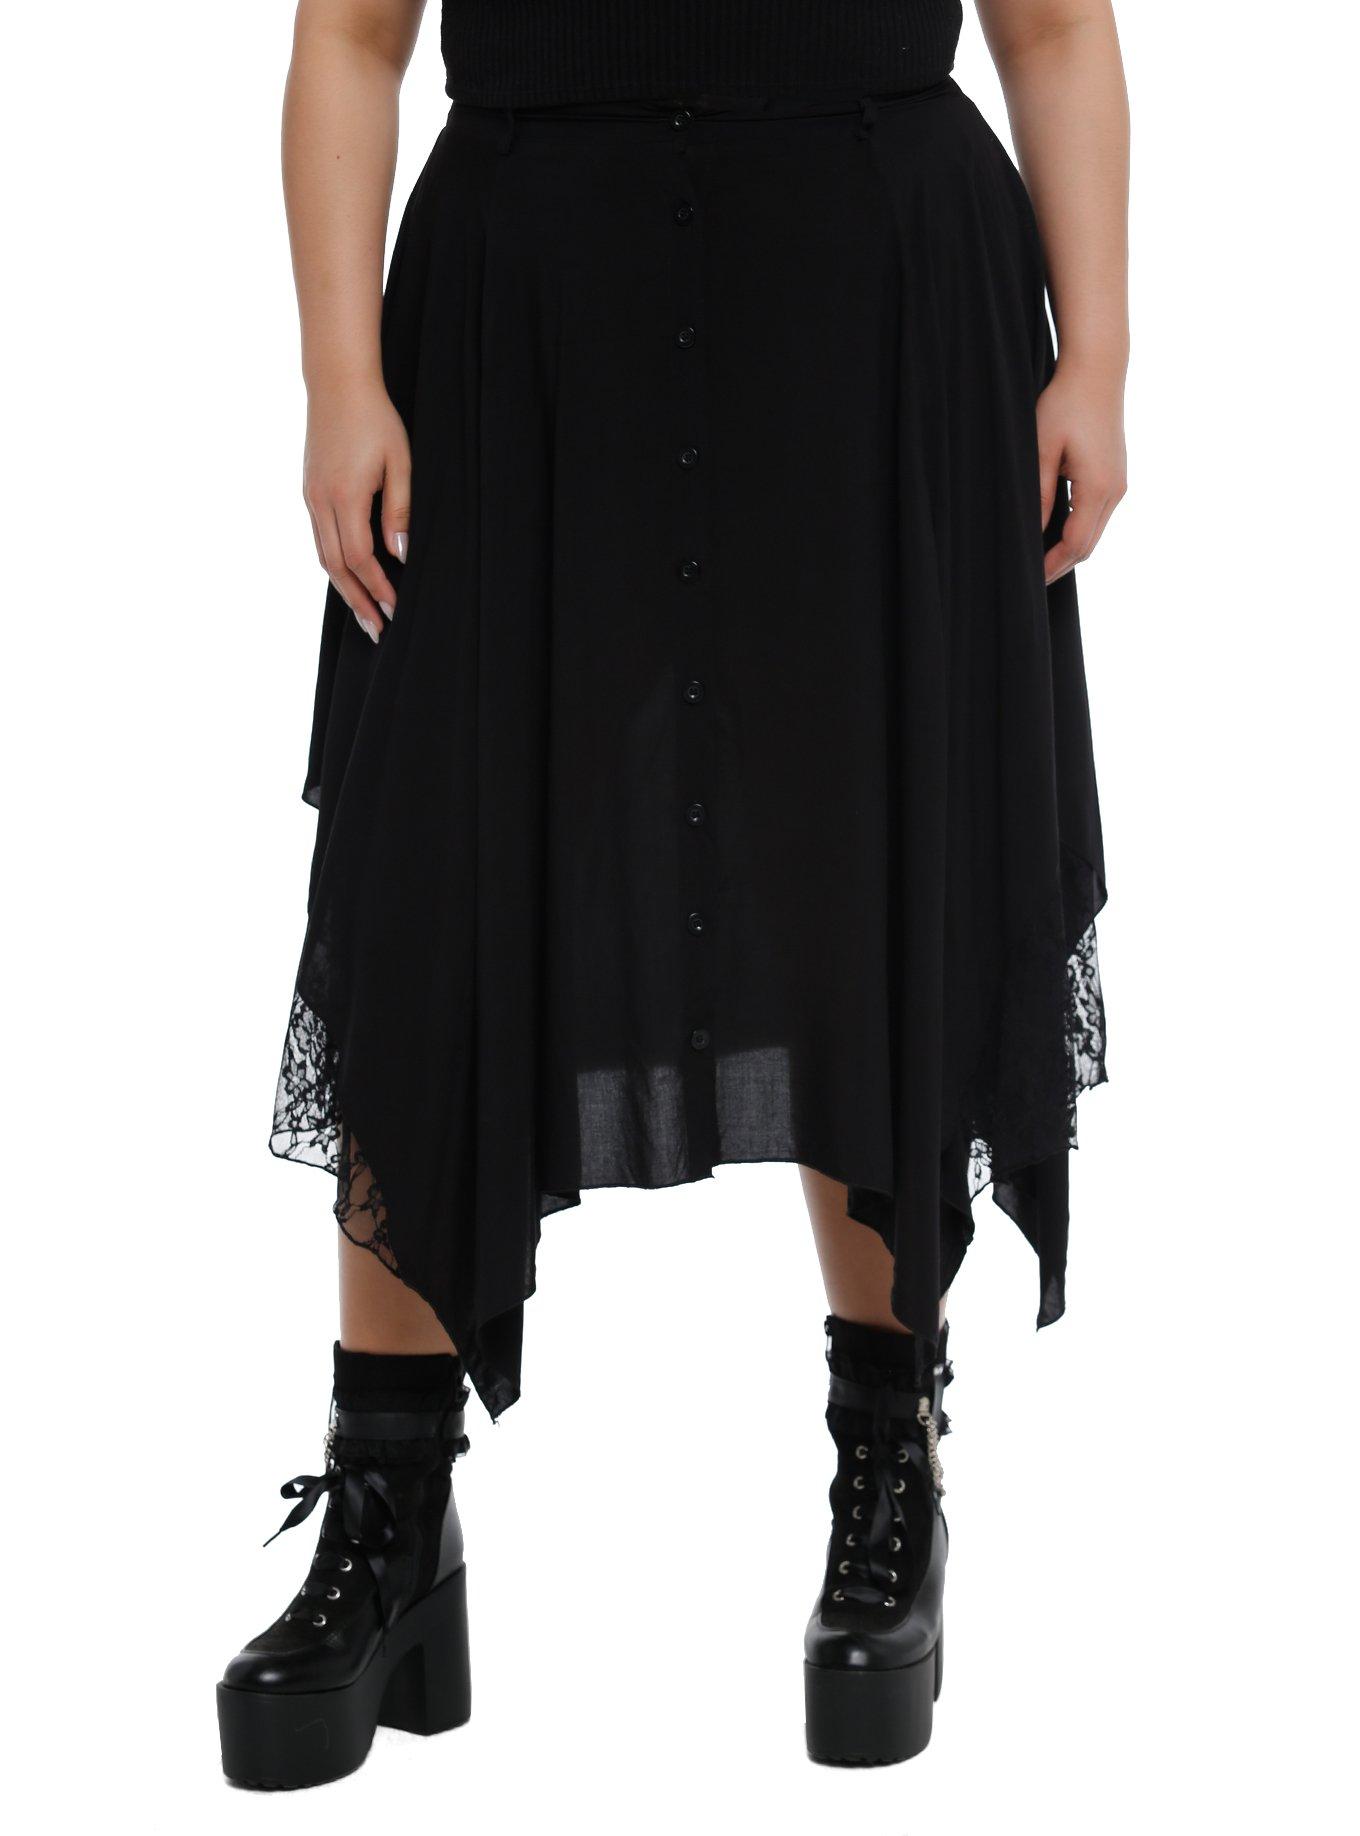 Black Lace Hanky Hem Midi Skirt Plus Size, BLACK, hi-res